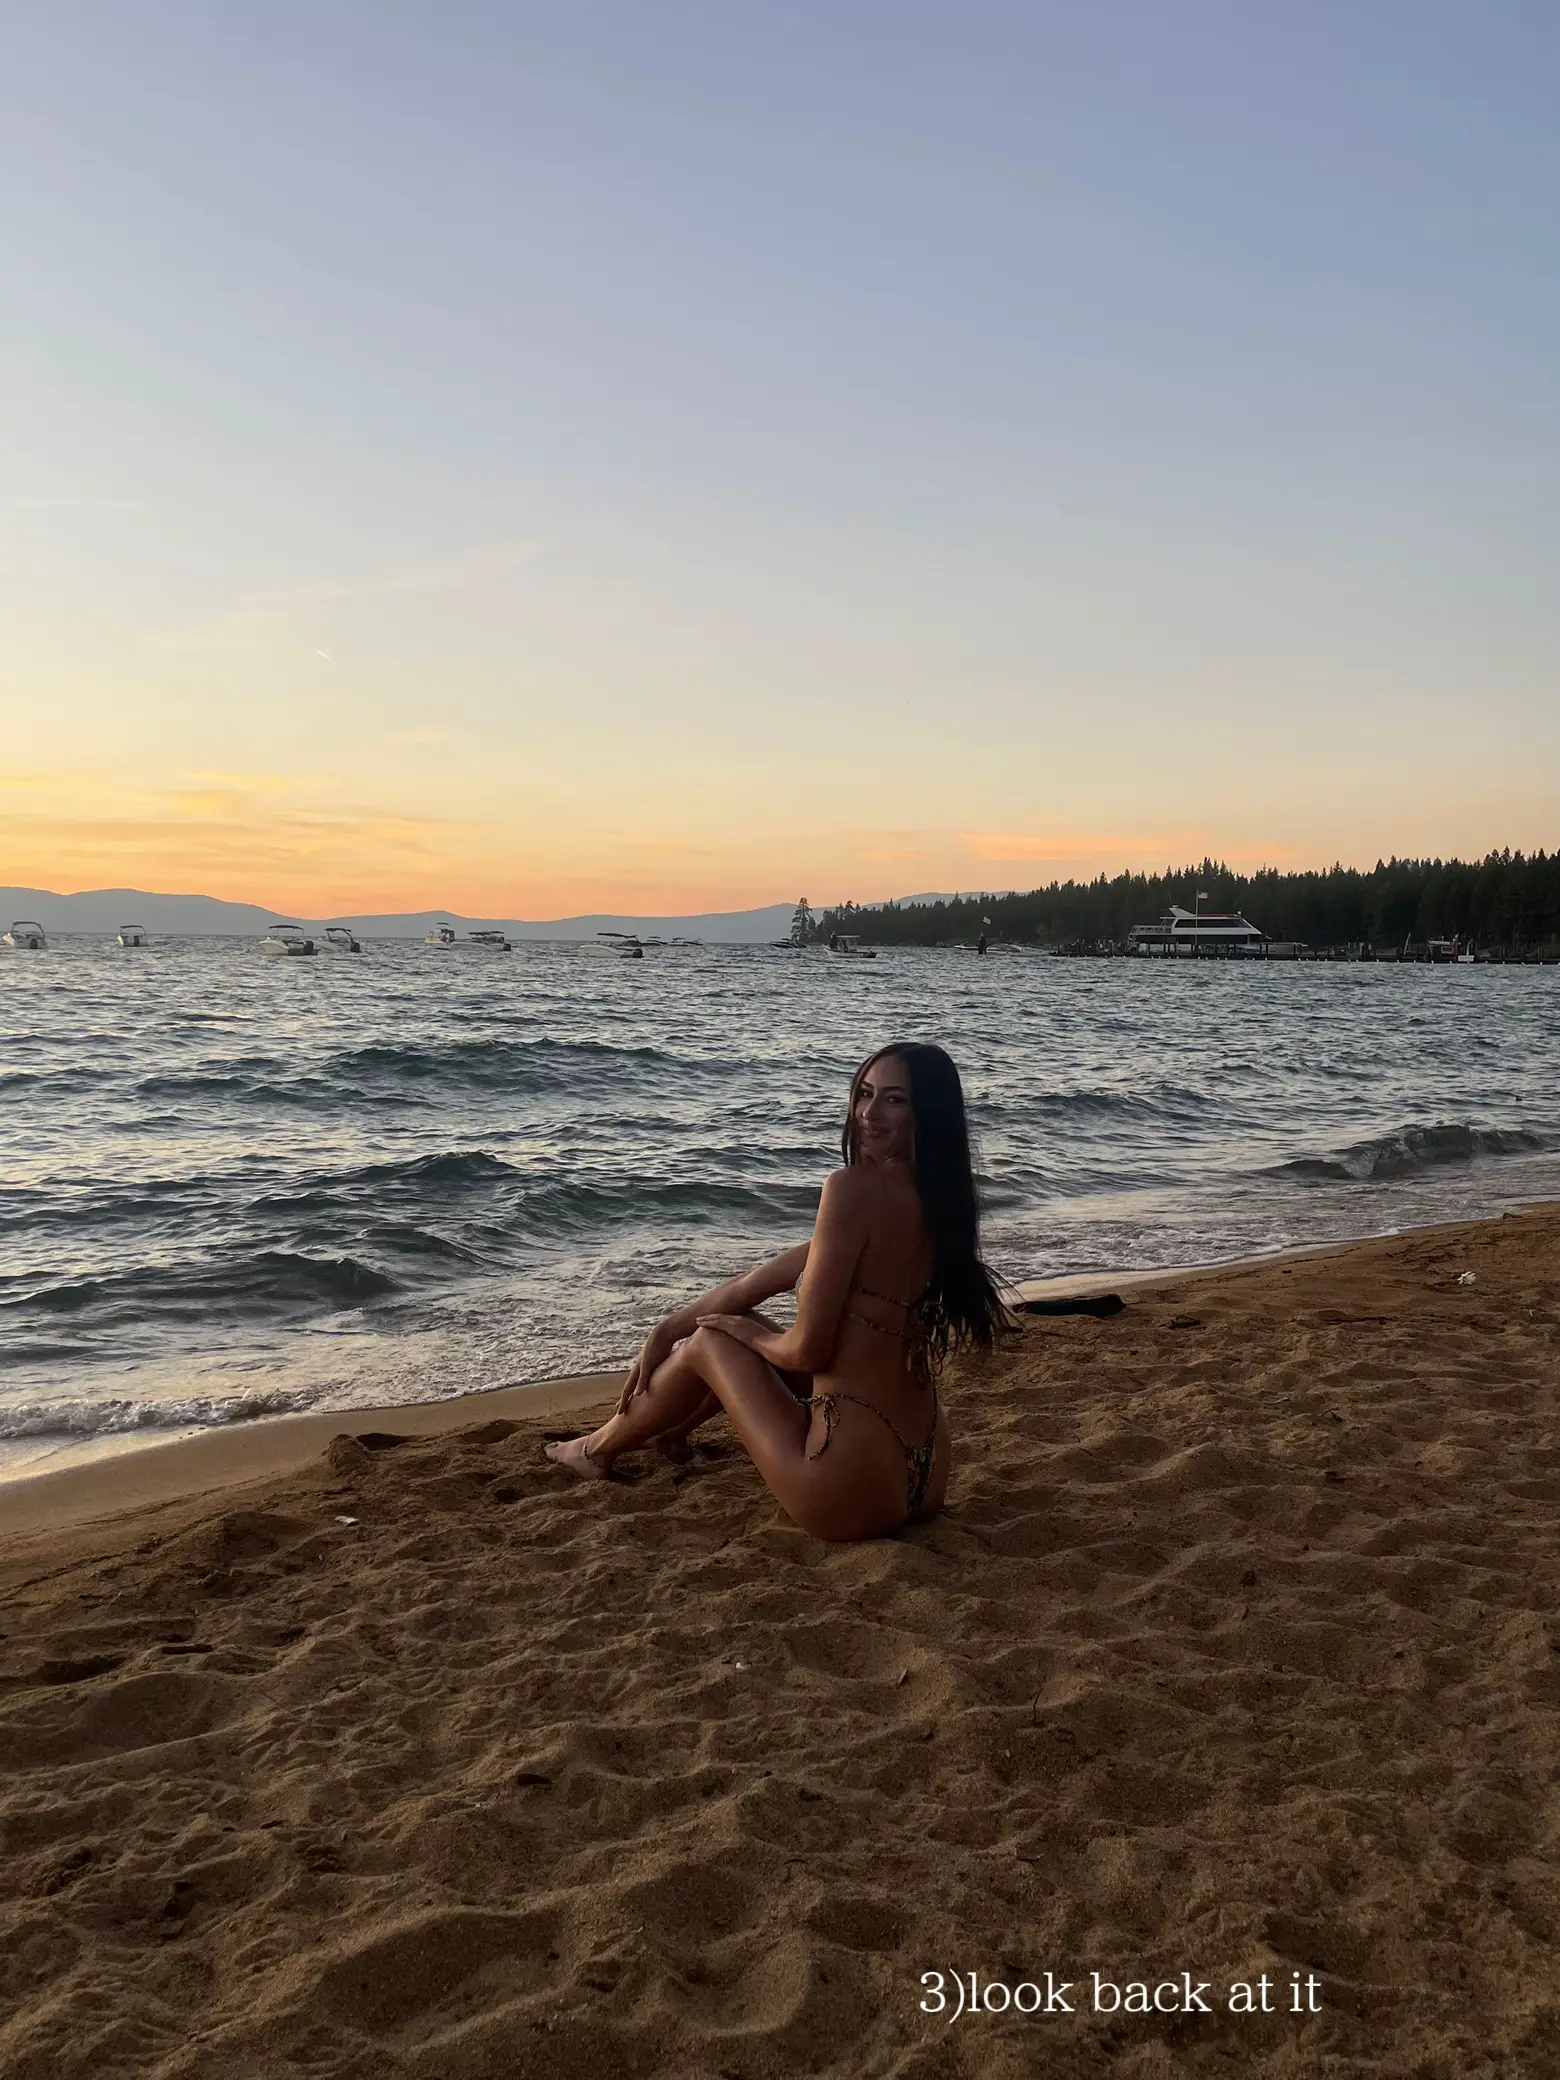  A woman in a bikini is laying on a beach.